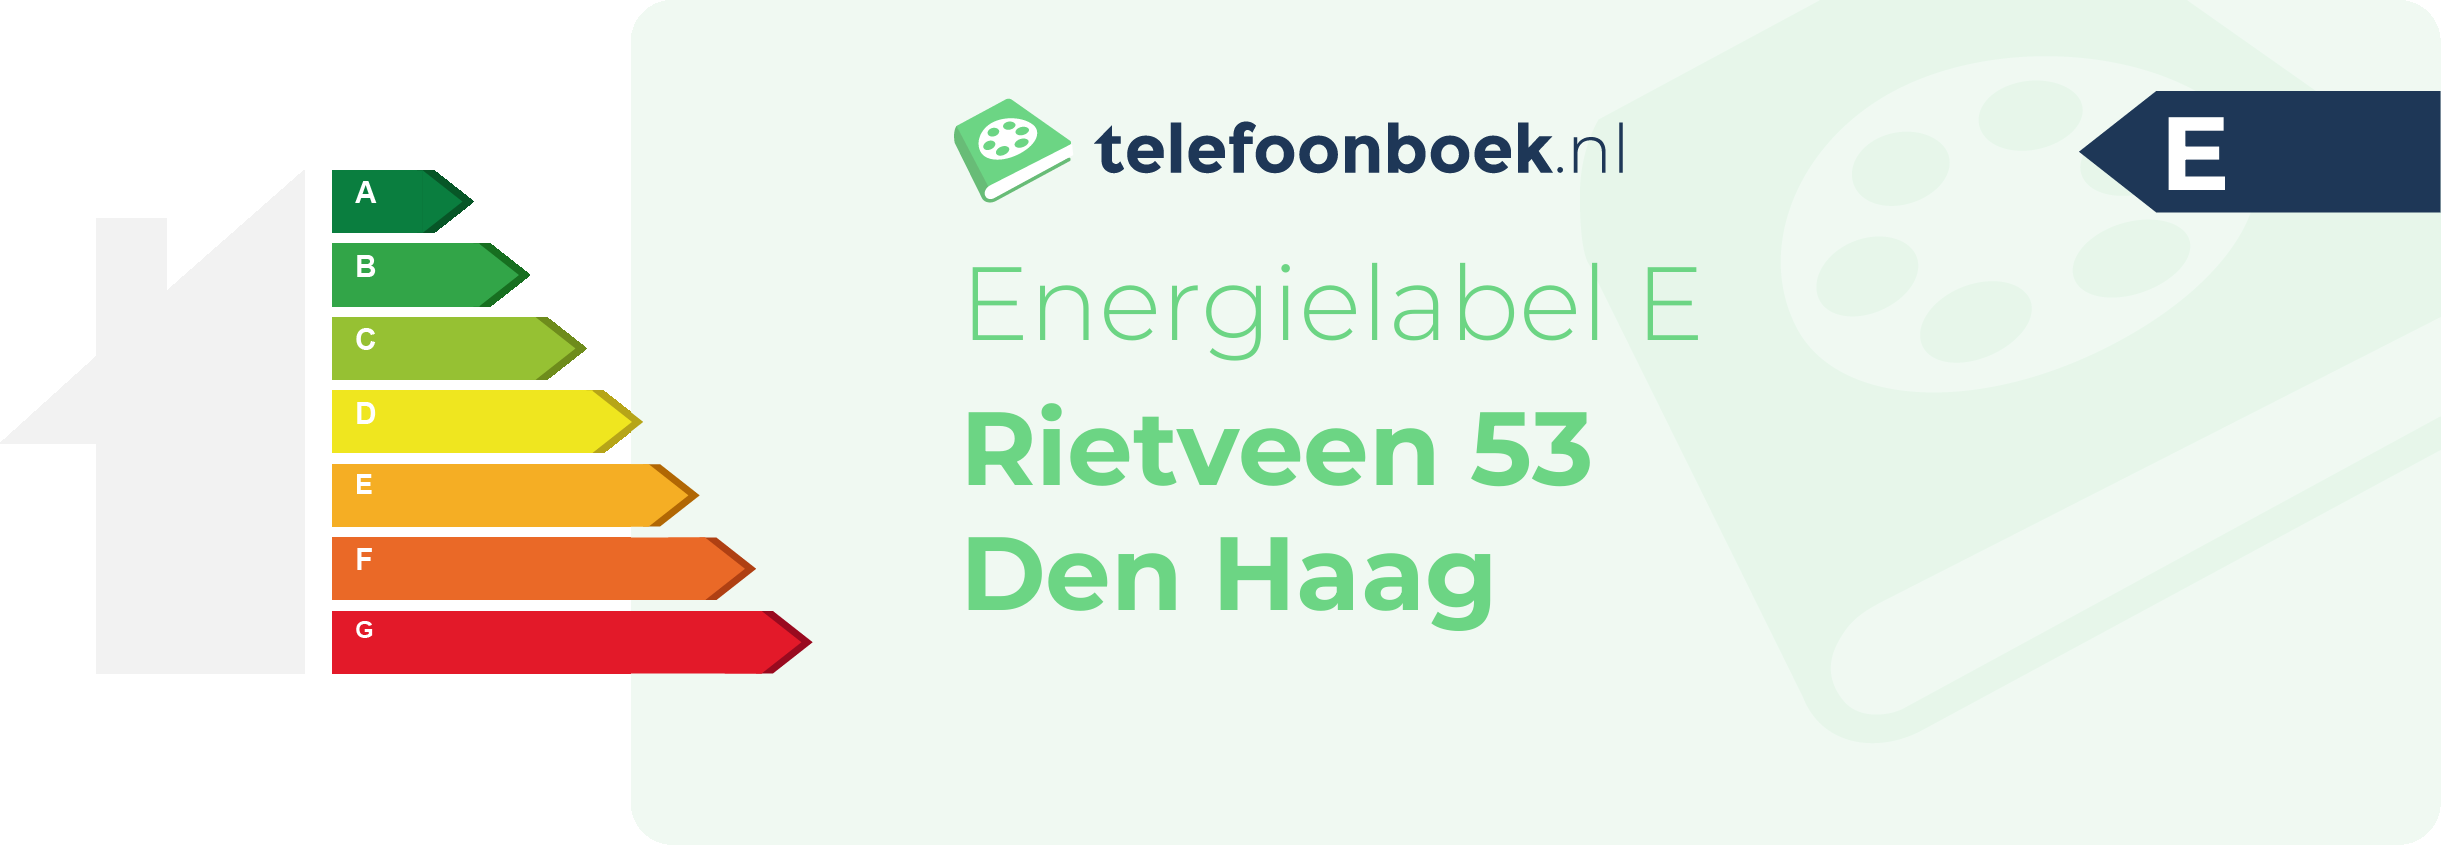 Energielabel Rietveen 53 Den Haag